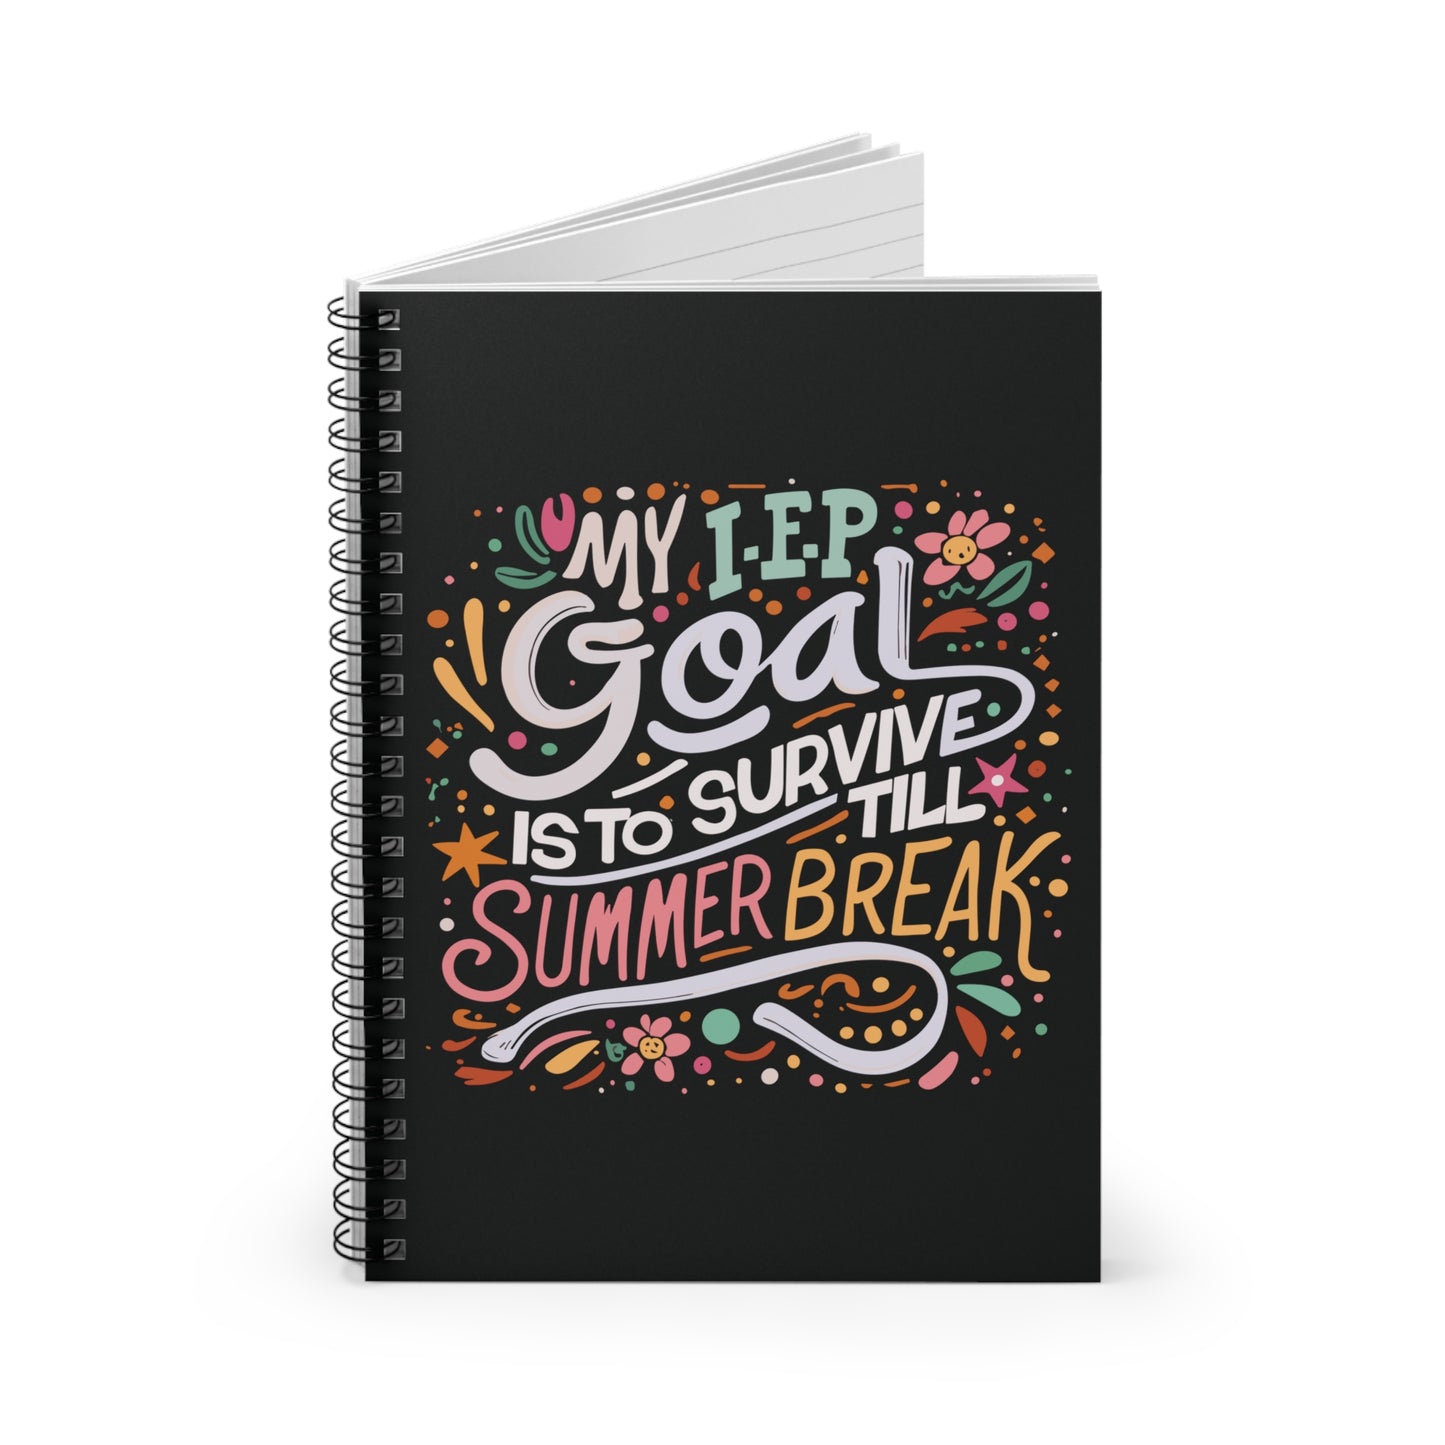 Special Ed Teacher Spiral Notebook - "My IEP Goal is to Survive Till Summer Break"